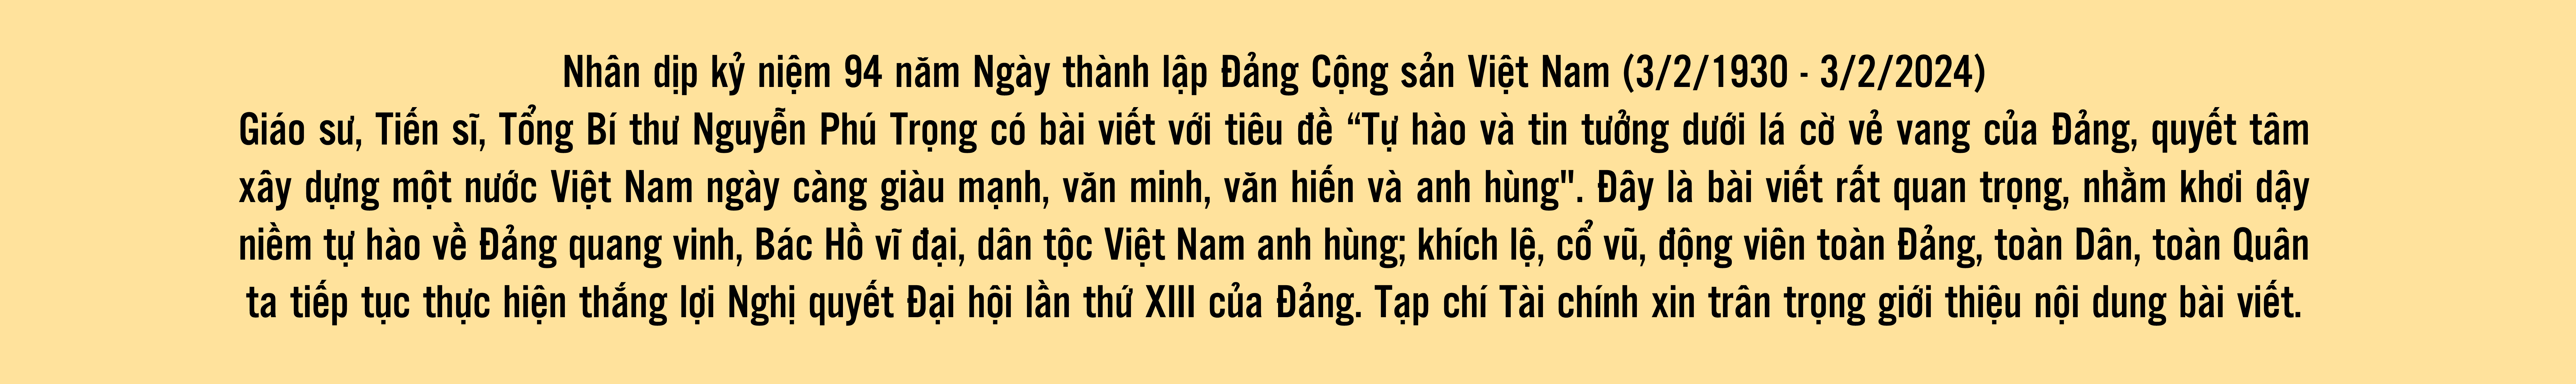 Tự hào và tin tưởng dưới lá cờ vẻ vang của Đảng, quyết tâm xây dựng một nước Việt Nam ngày càng giàu mạnh, văn minh, văn hiến và anh hùng - Ảnh 2